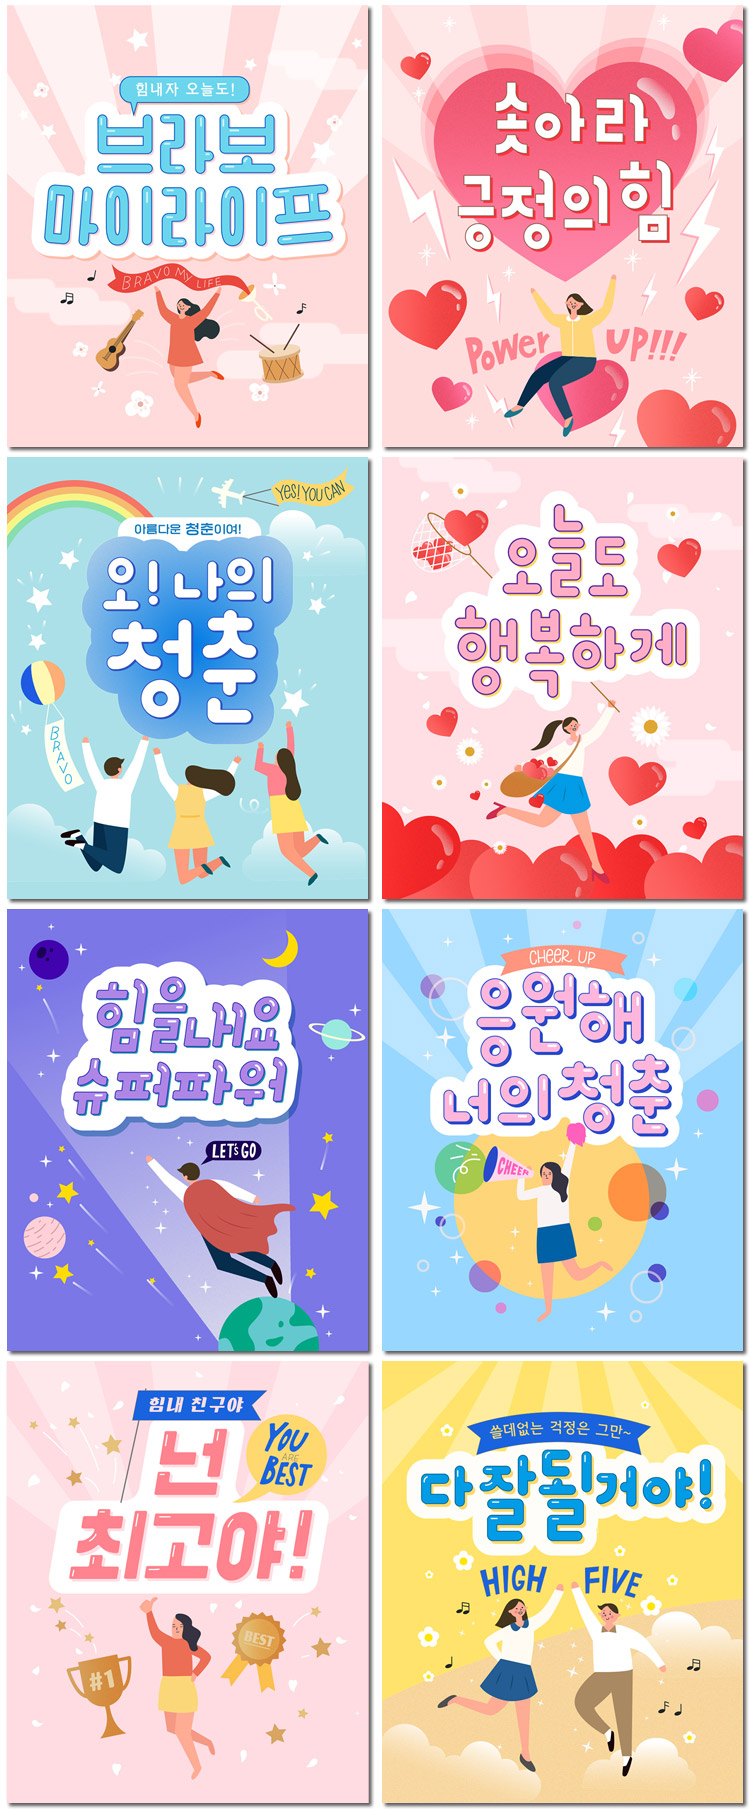 韩国职场生活爱情人物活动庆祝海报手绘插画插图矢量模板设计素材